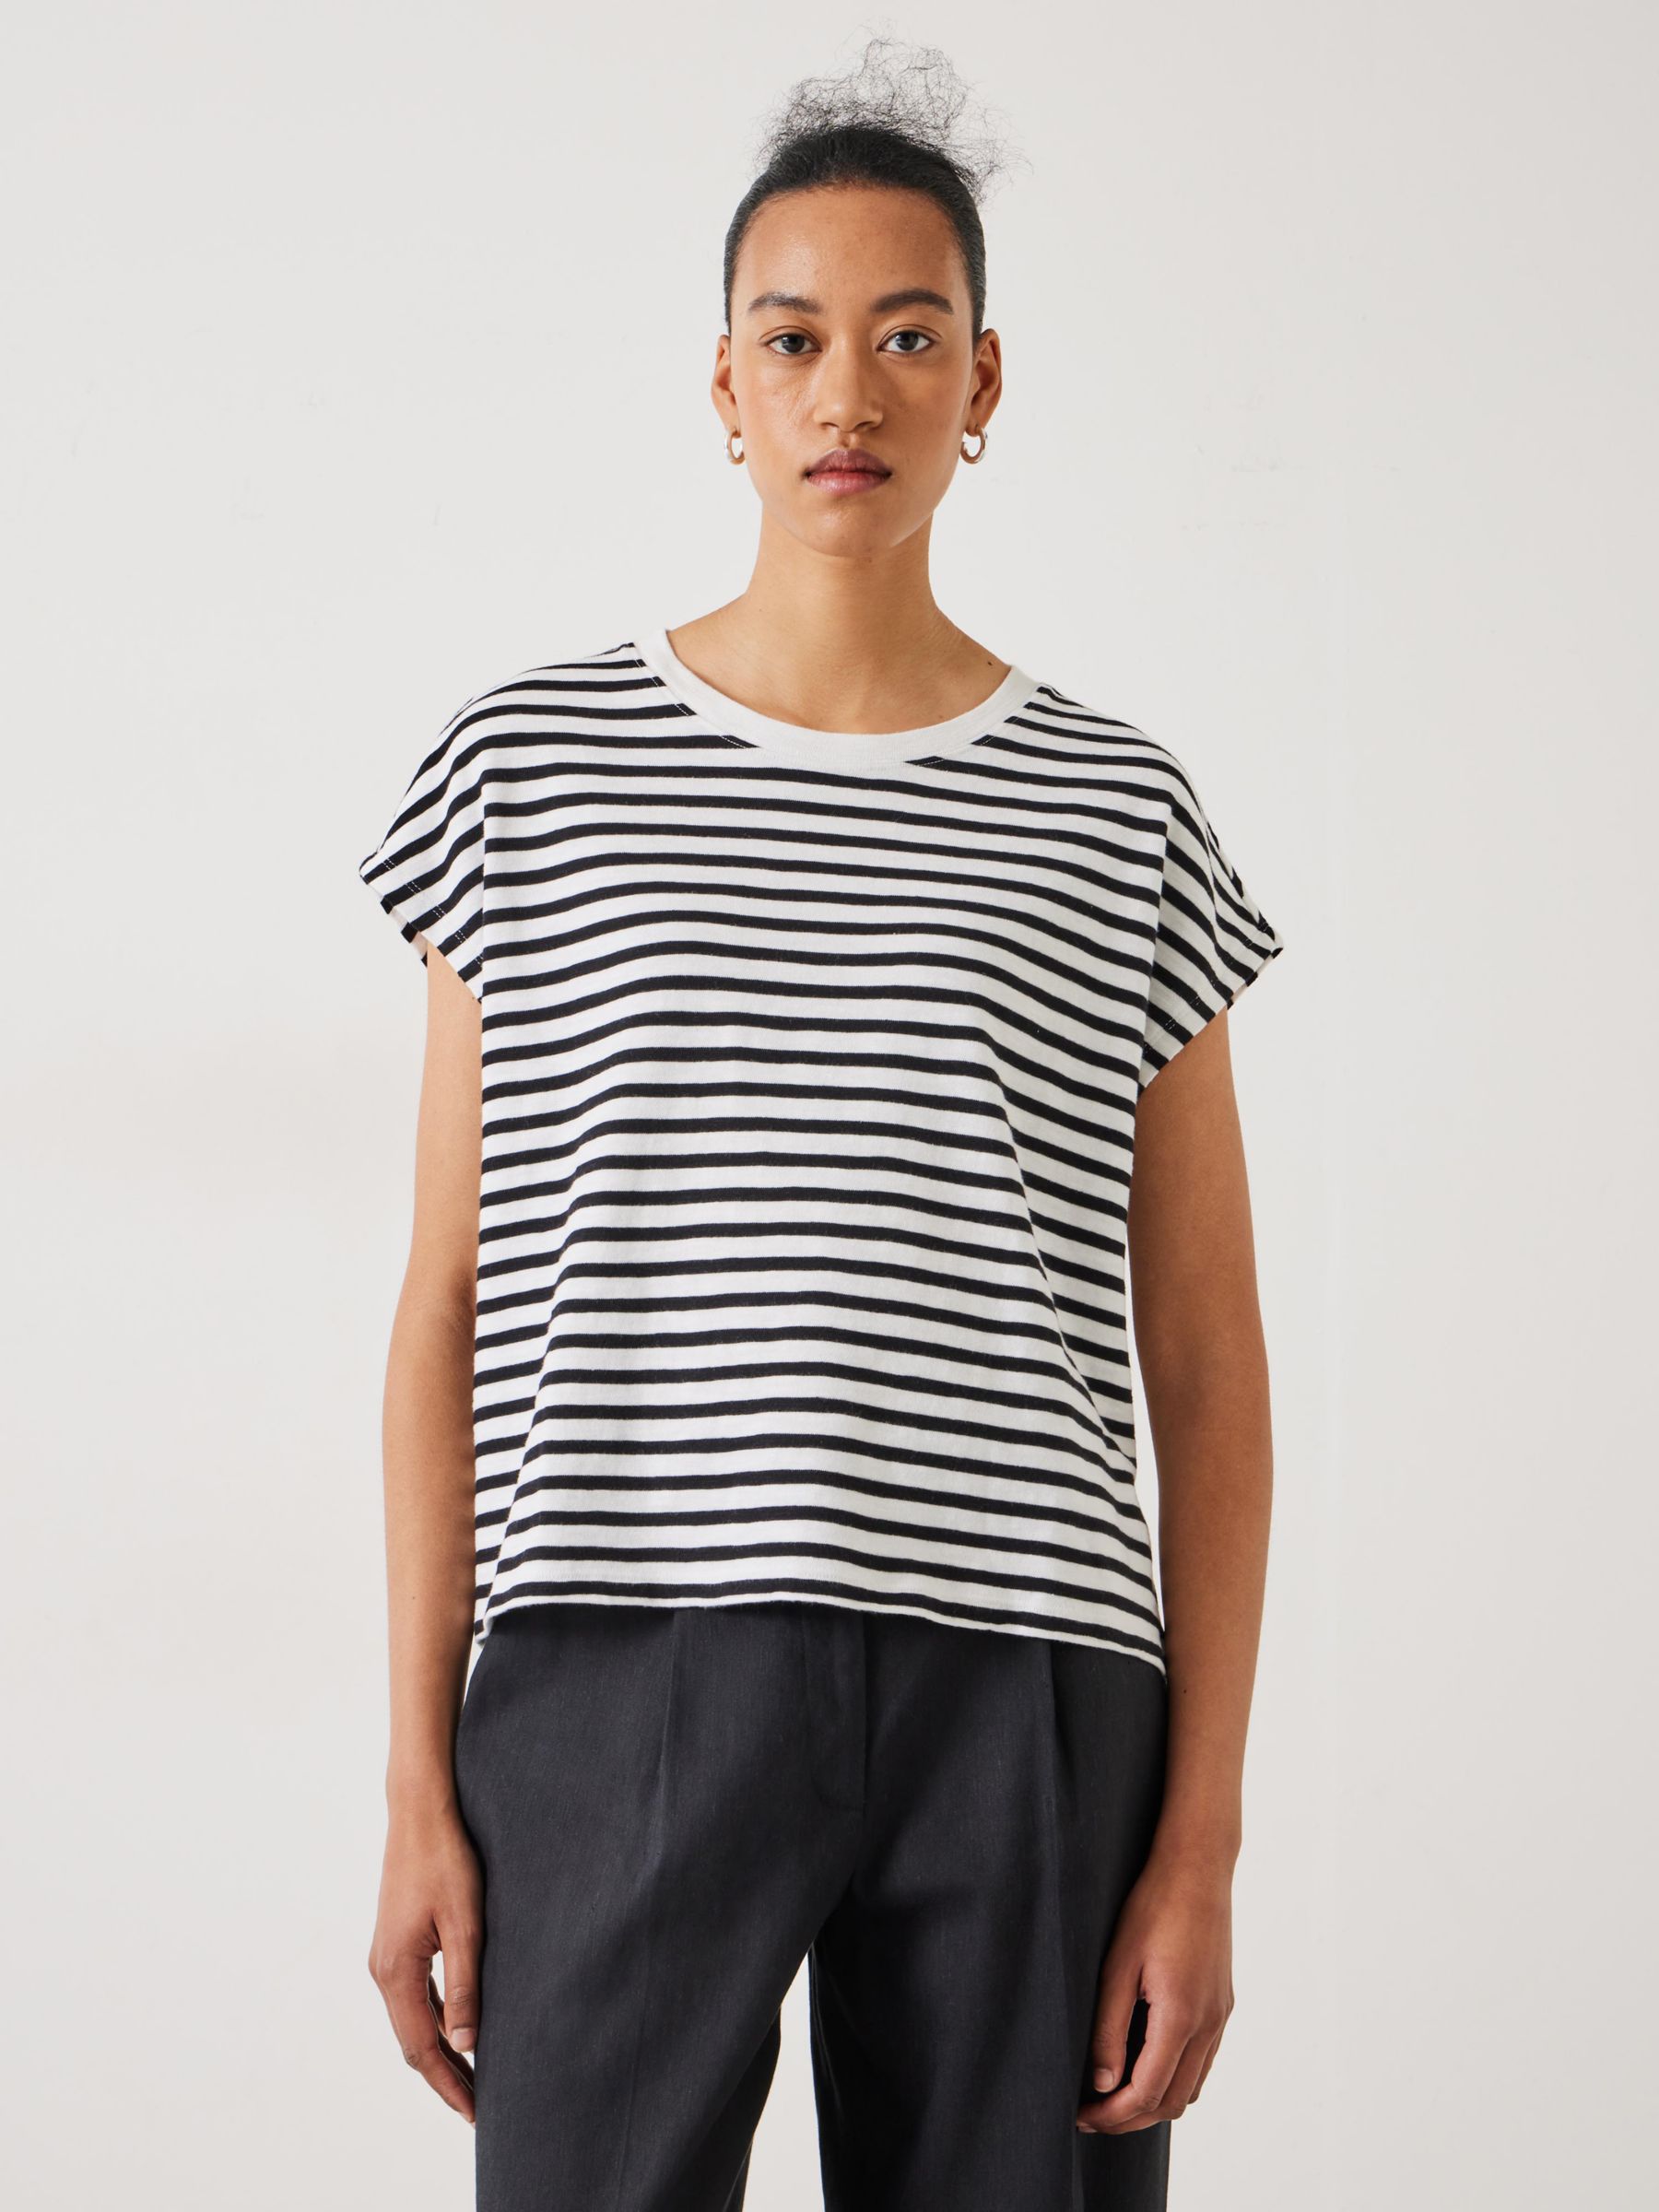 HUSH Piper Stripe Cap Sleeve T-Shirt, White/Black, L